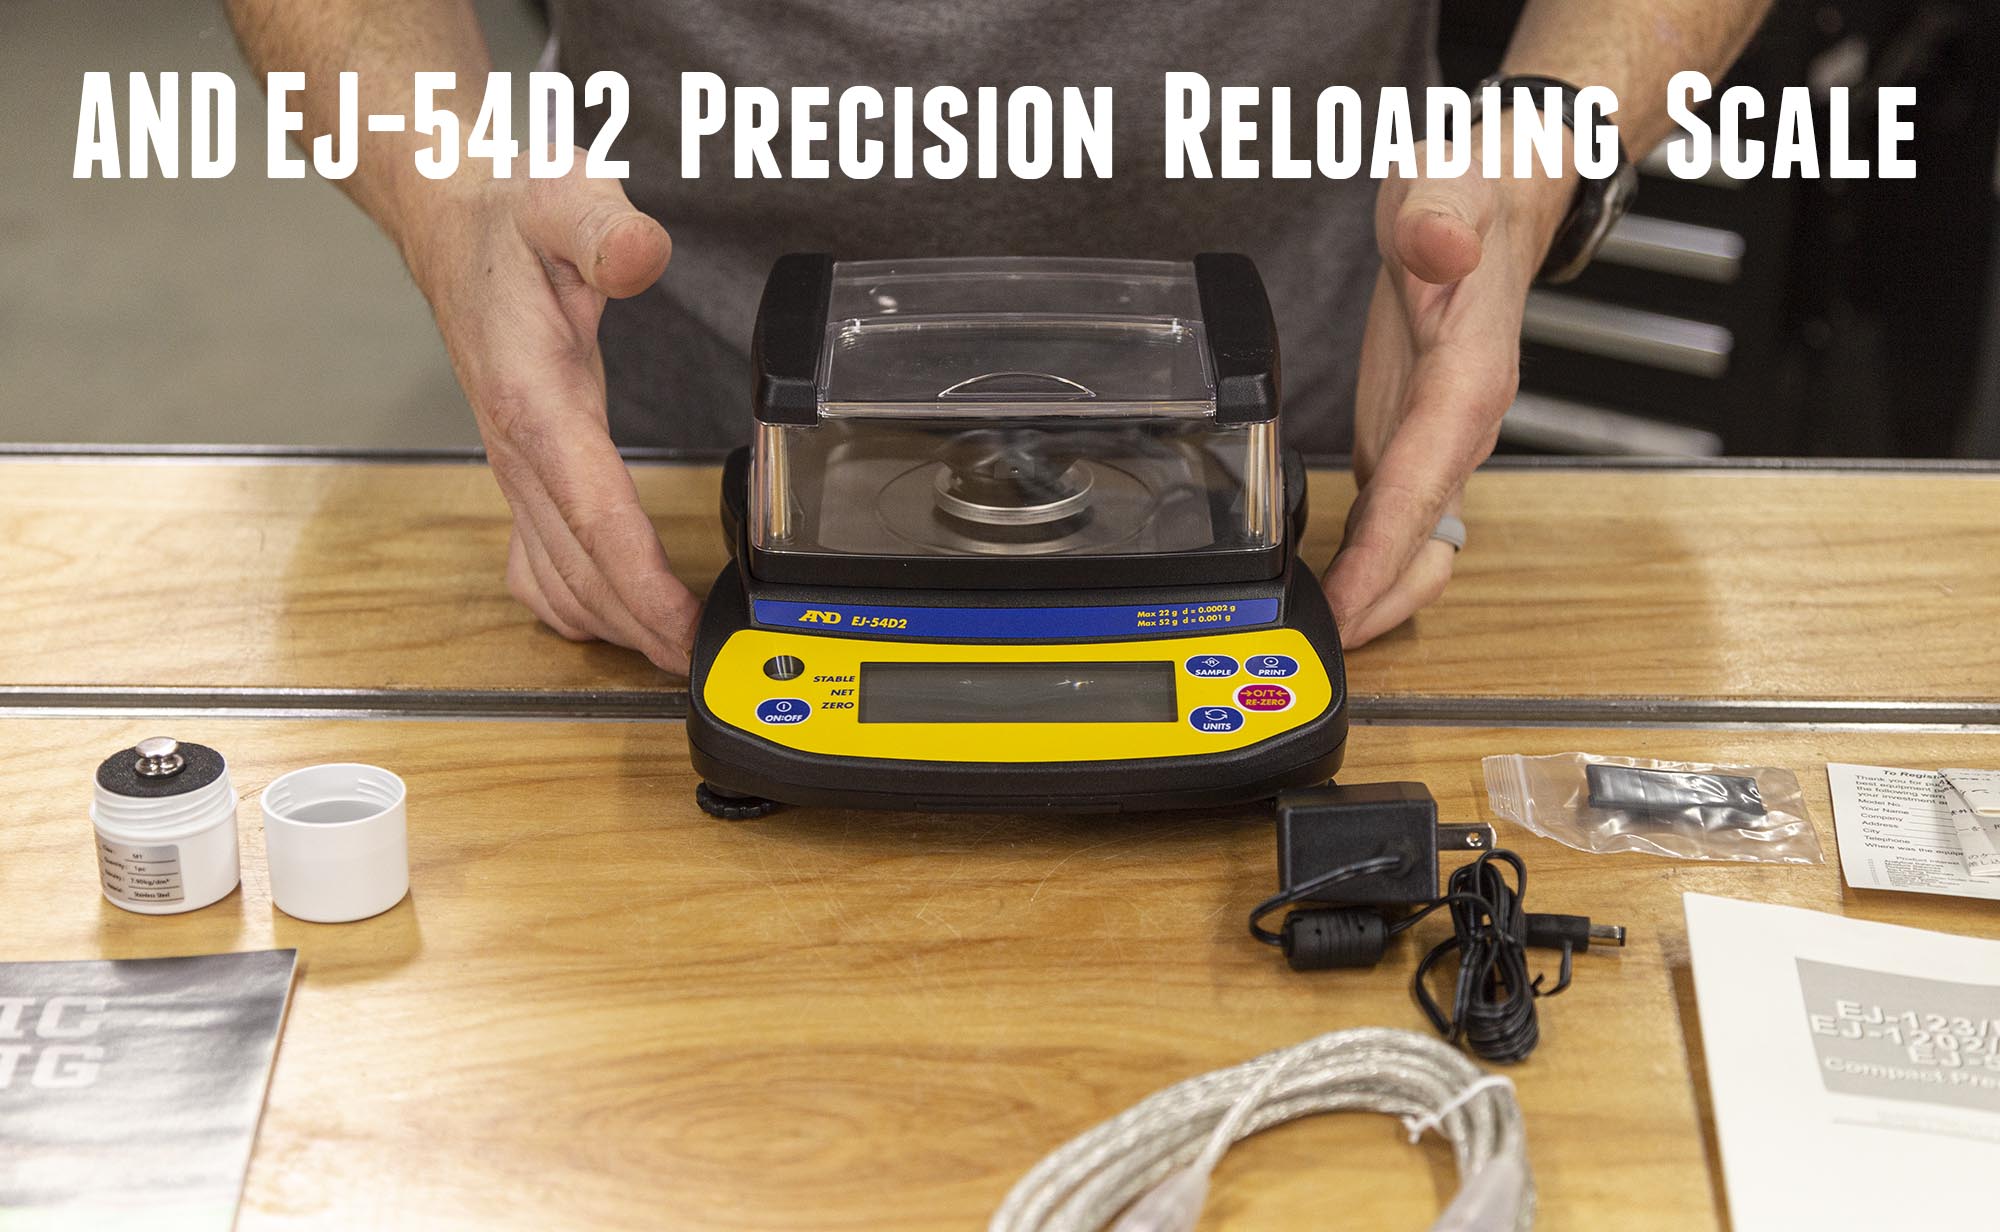 A&D EJ-123 - Lower Price - 0.001 Gram Precision Balance